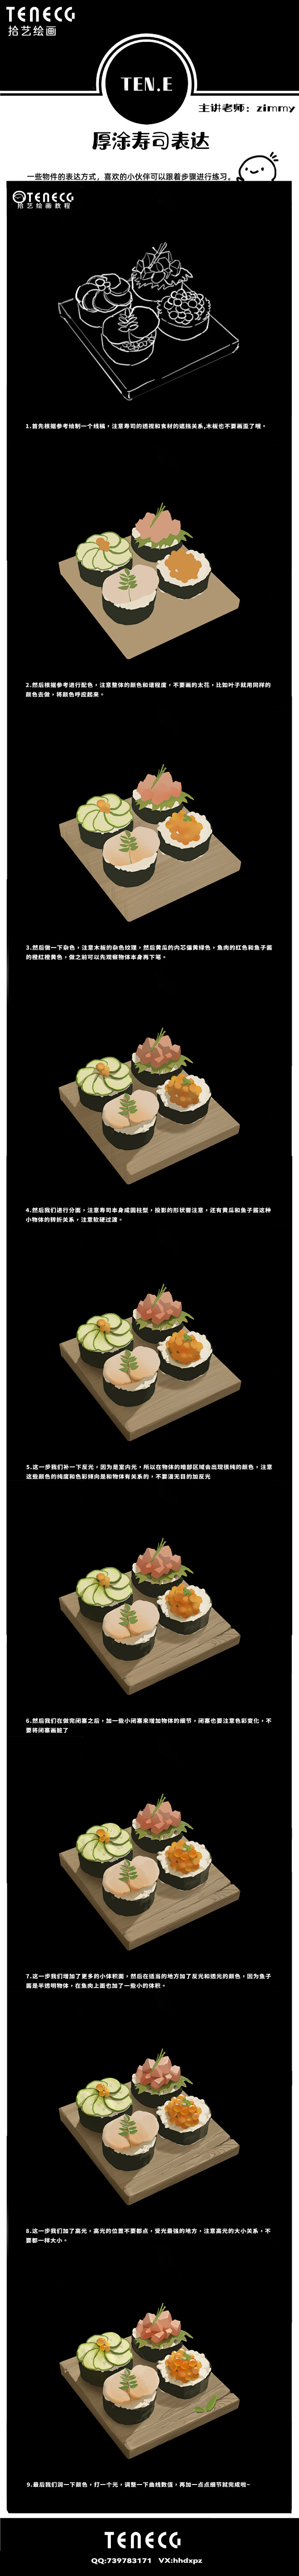 【拾艺绘画教程】
旋转寿司在旋转的过程中...